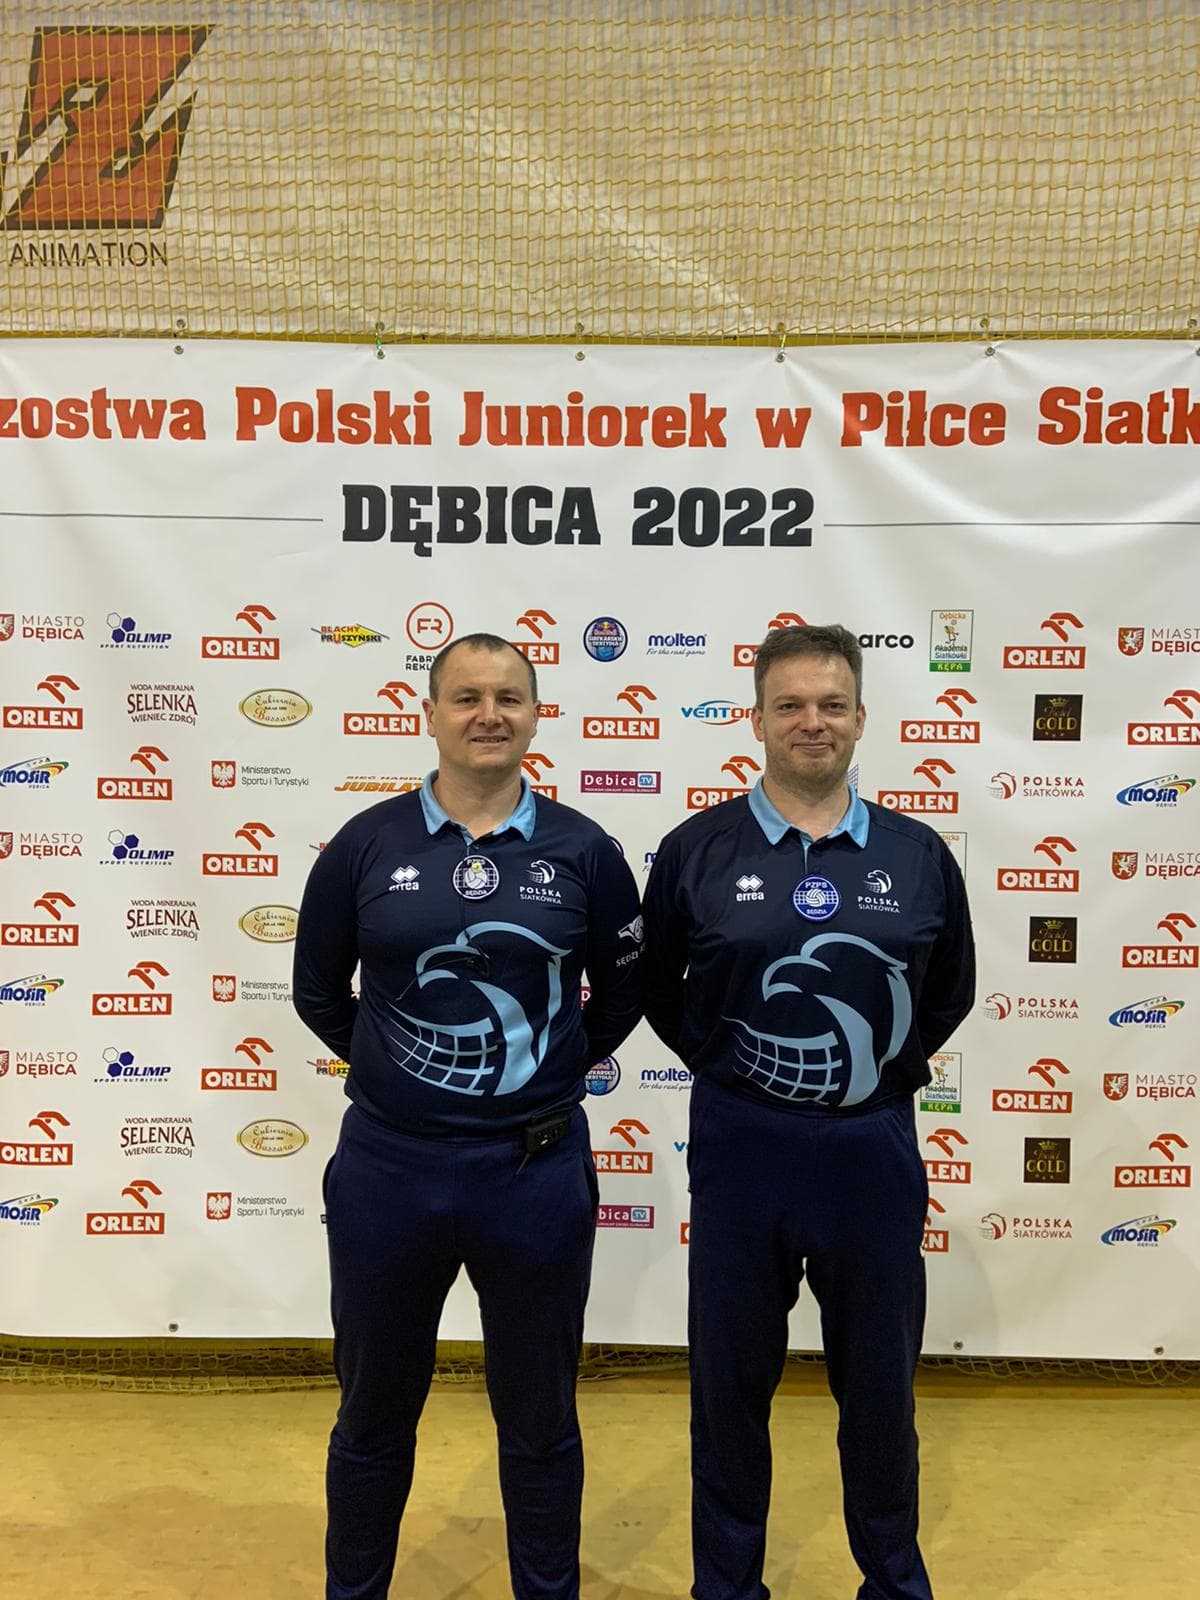 Siatkarski arbiter z Częstochowy Marcin Dobrzański sędziował mecz o złoty medal w mistrzostwach Polski juniorek w Dębicy 1